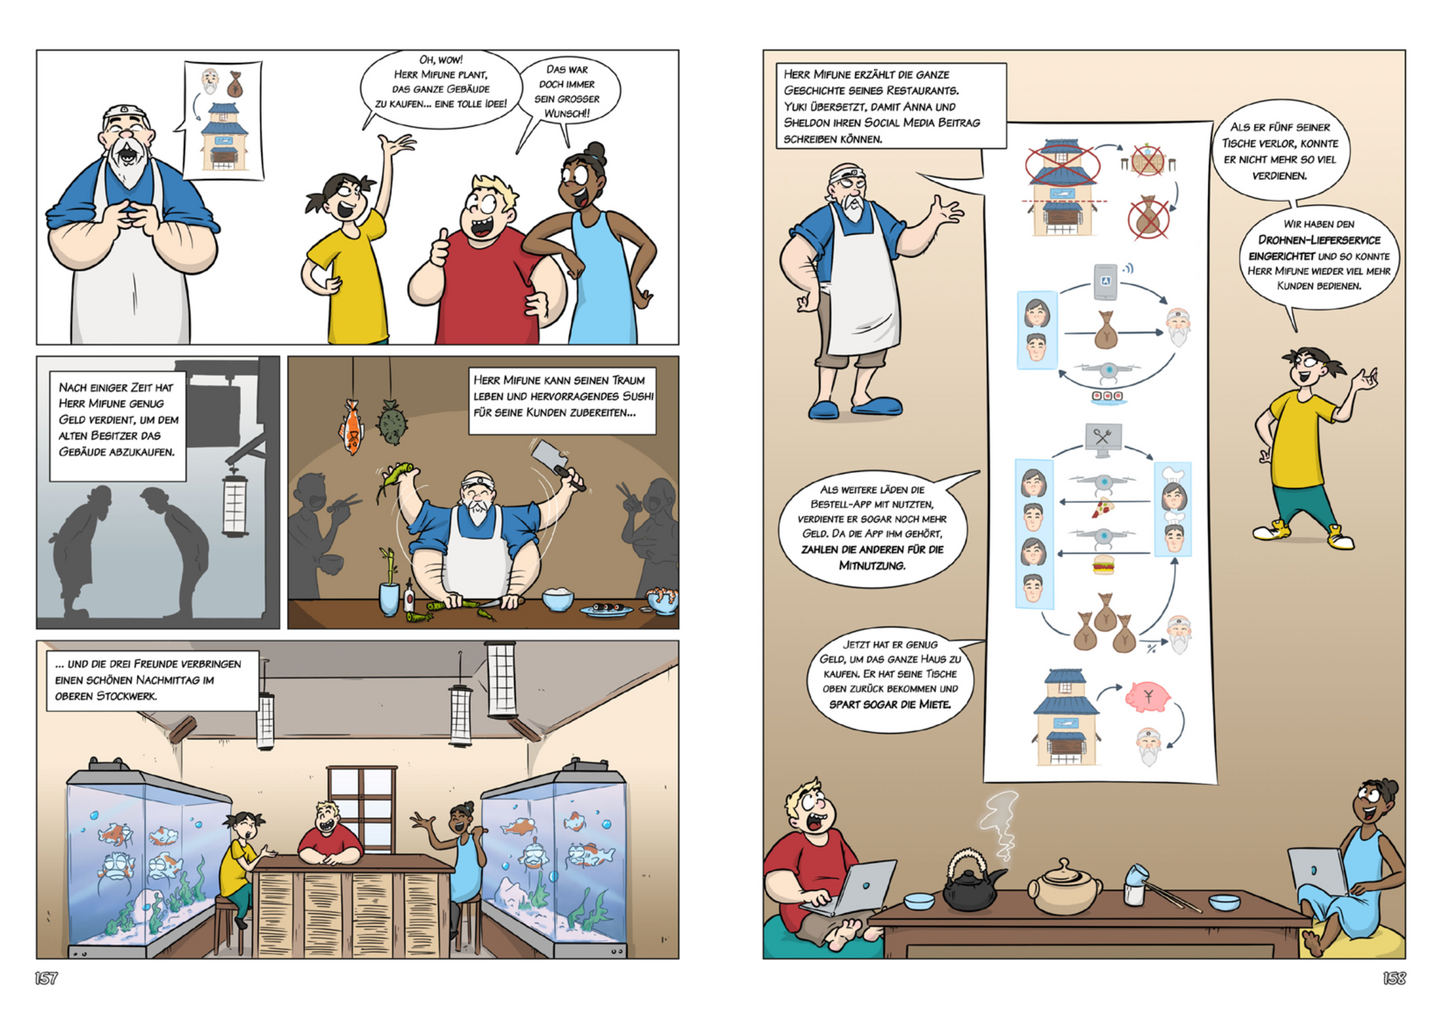 Biz4Kids - Ein Business Model Comic für Kinder Taschenbuch - signiert